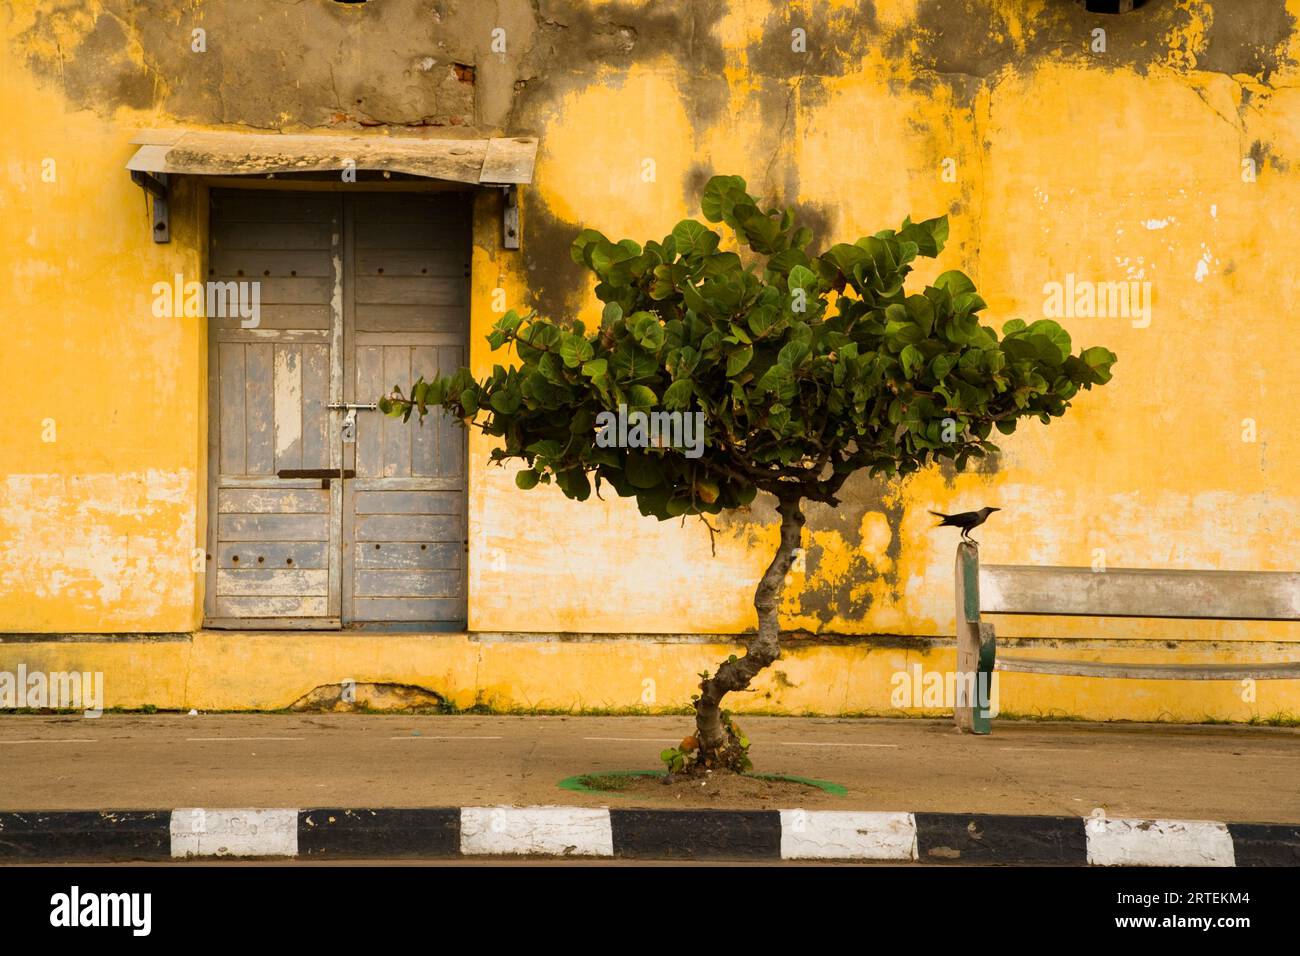 Scène de rue avec un oiseau, banc, arbre et porte ; Puducherry, Tamil Nadu, Inde Banque D'Images